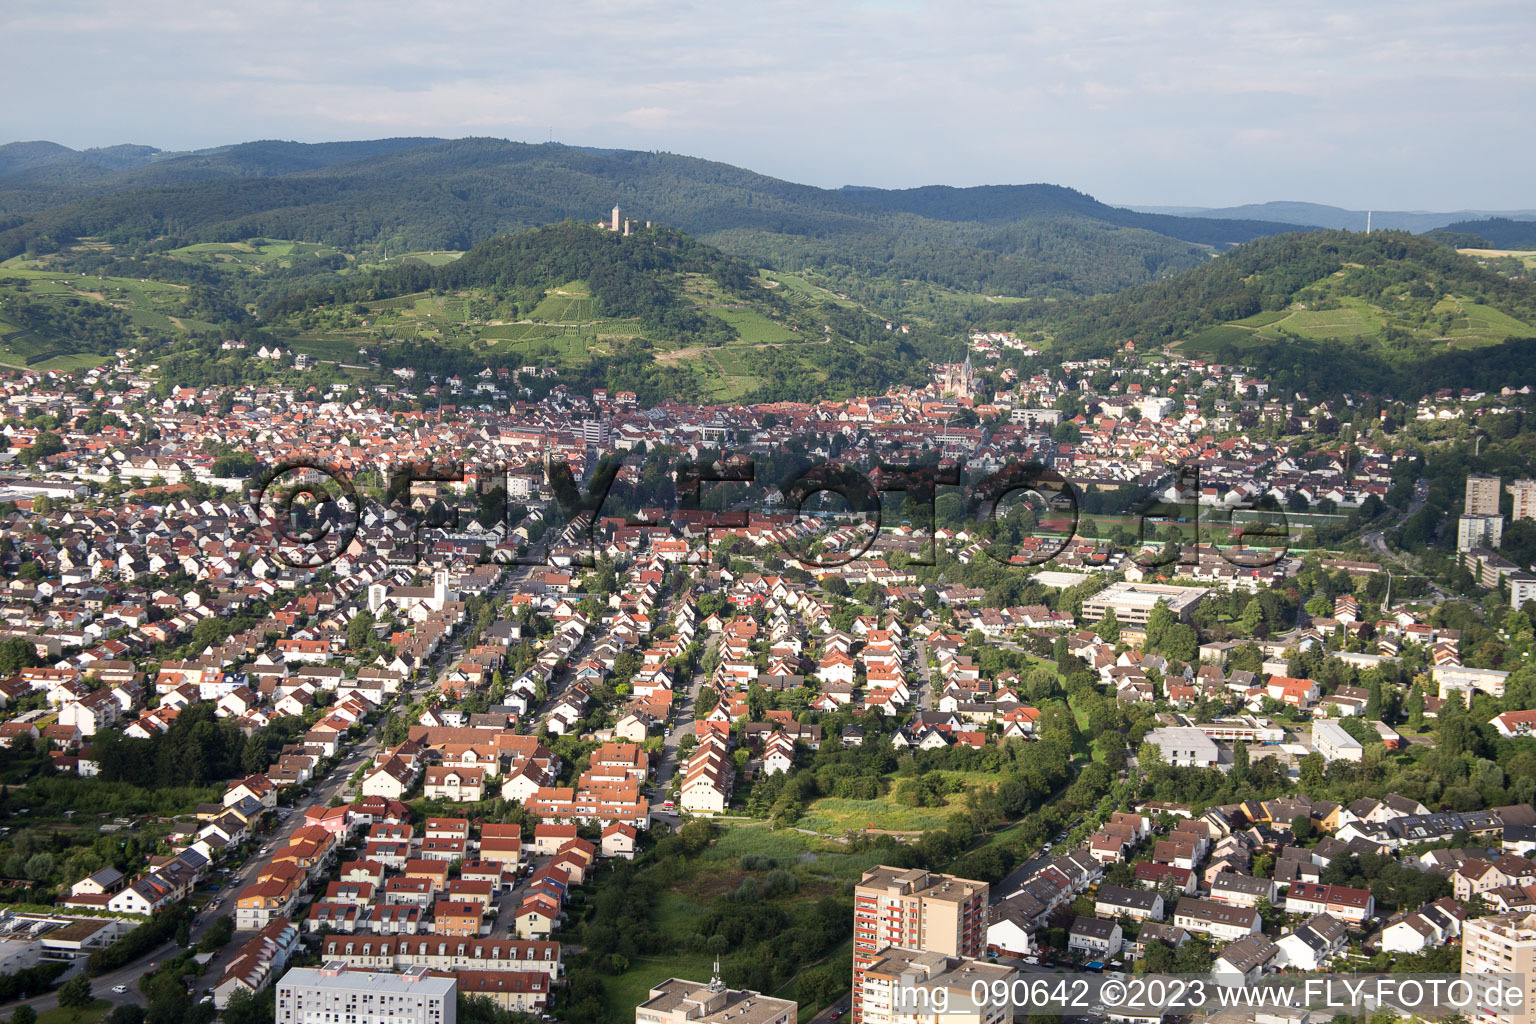 Heppenheim in Heppenheim an der Bergstrasse im Bundesland Hessen, Deutschland von oben gesehen